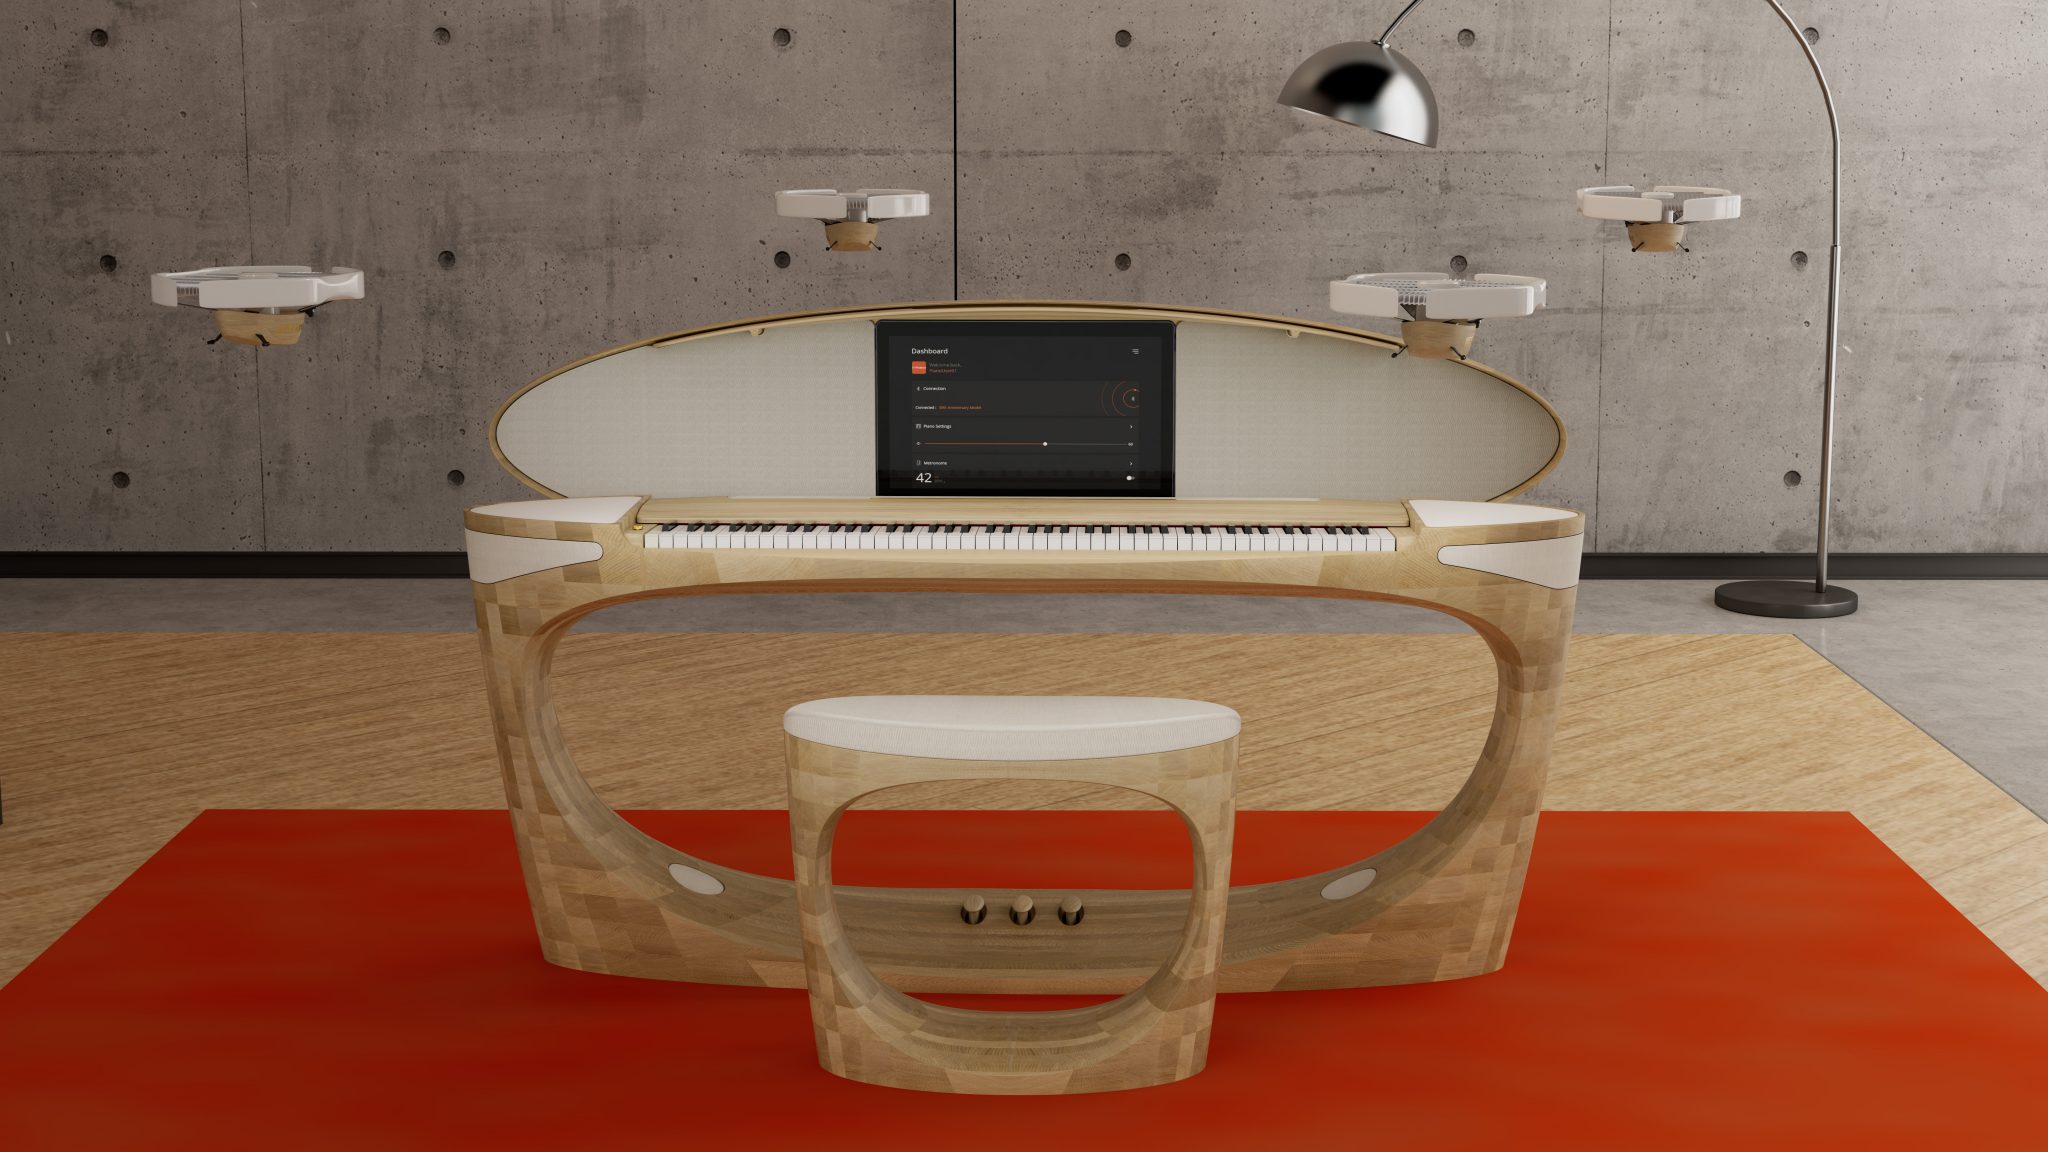 Roland anuncia un piano con una tableta integrada y drones como altavoces